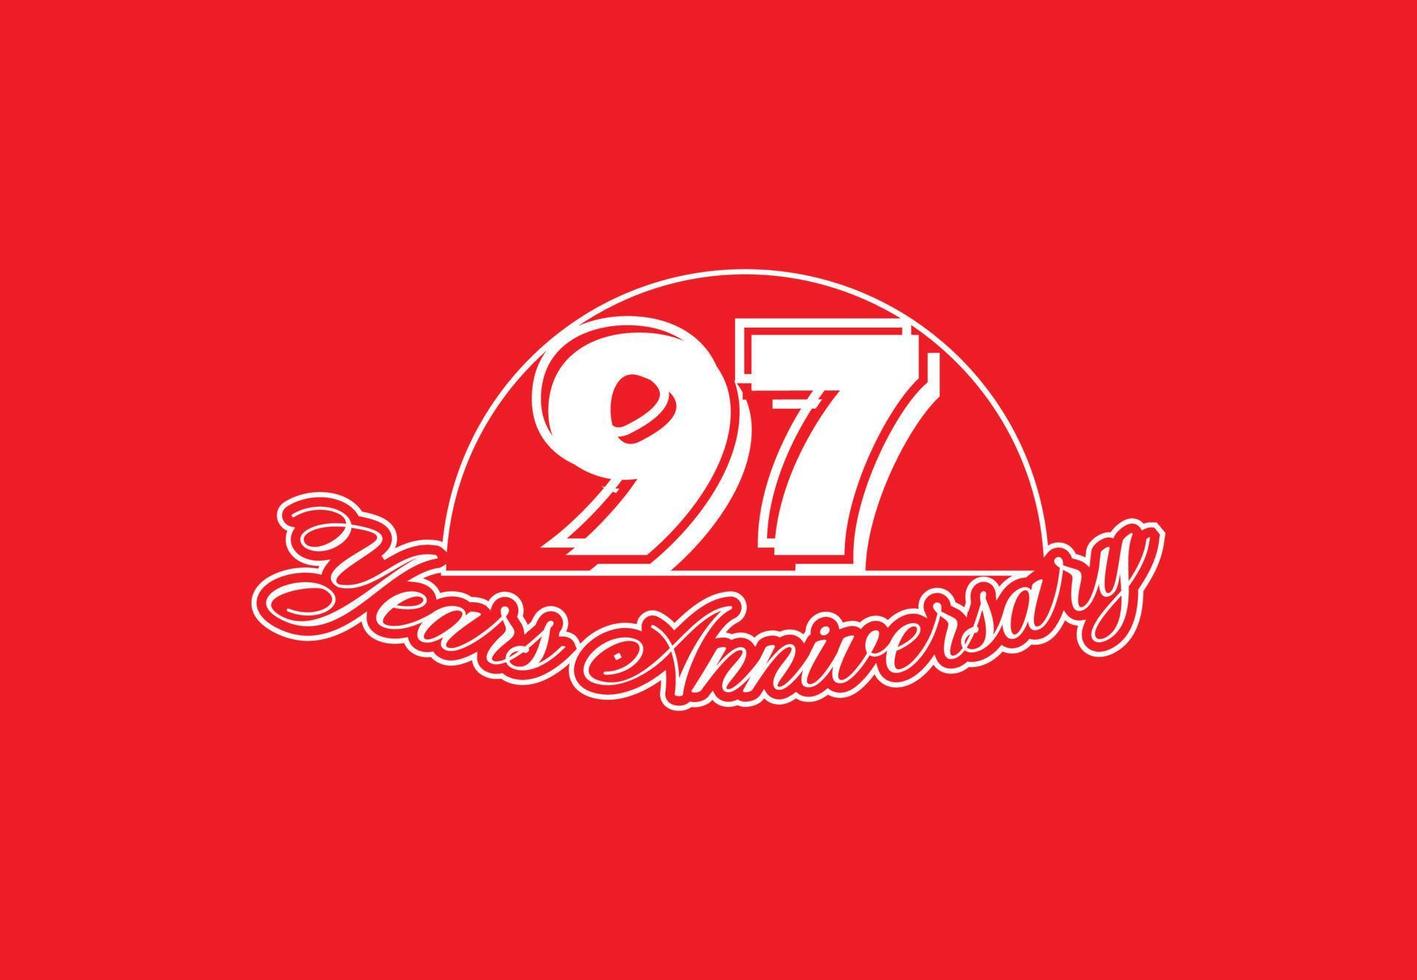 Conception du logo et de l'autocollant du 97e anniversaire vecteur